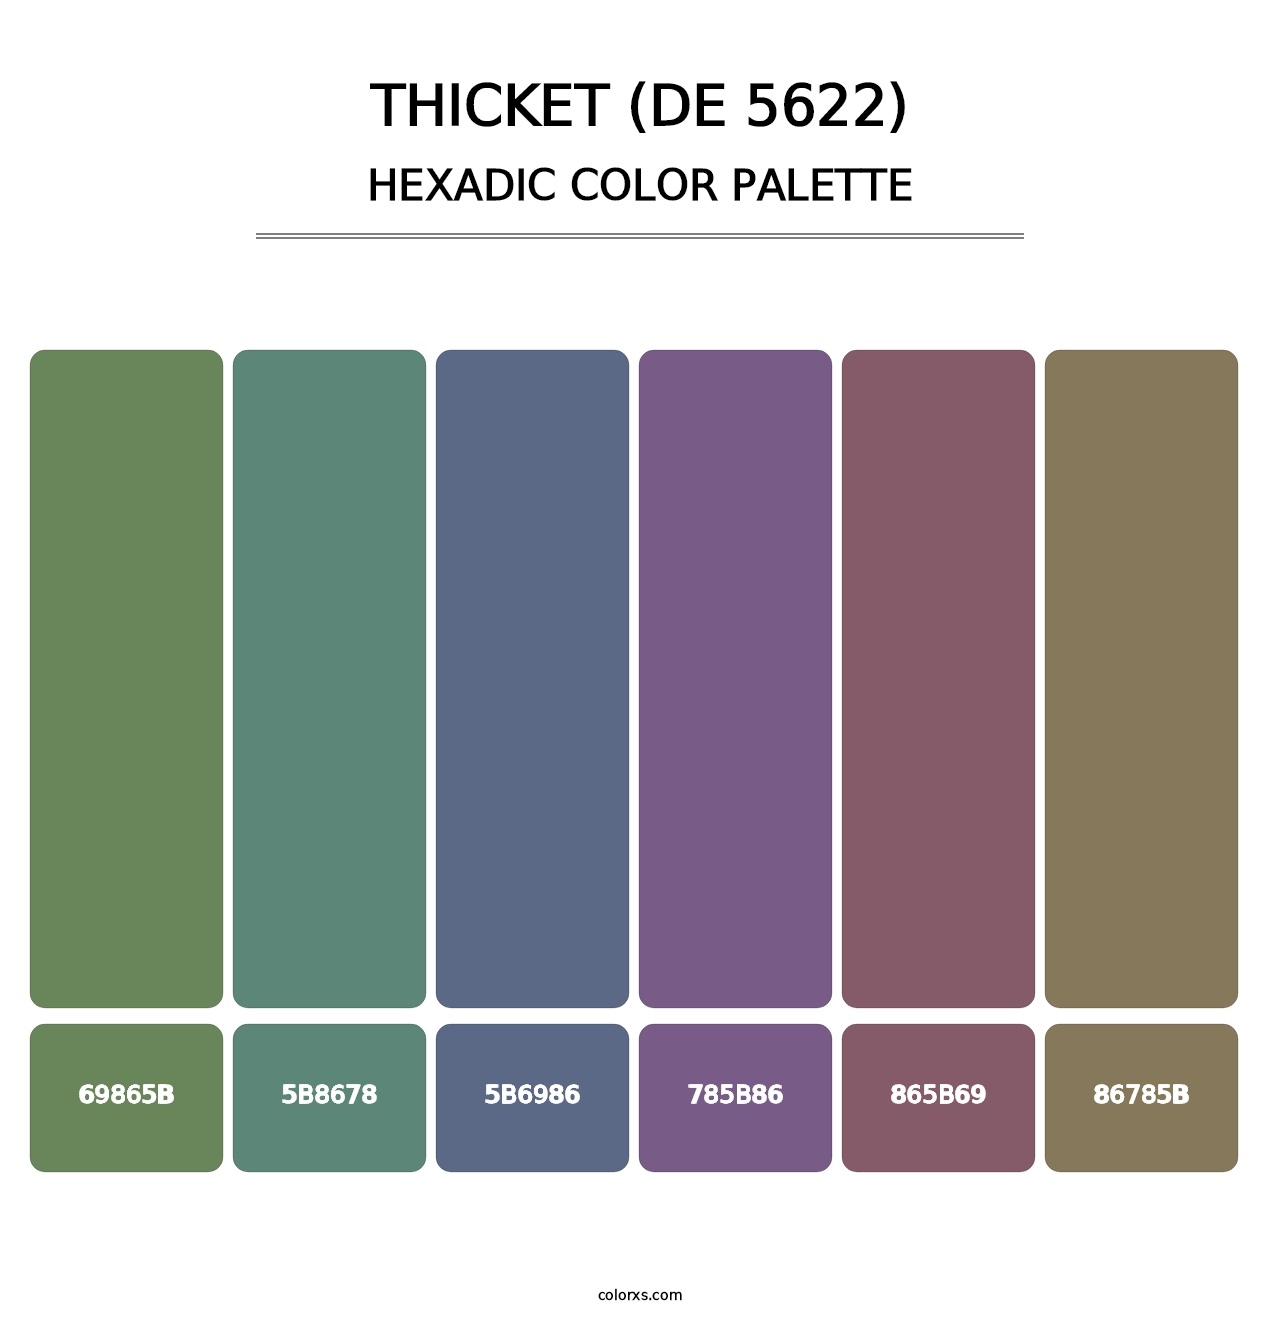 Thicket (DE 5622) - Hexadic Color Palette